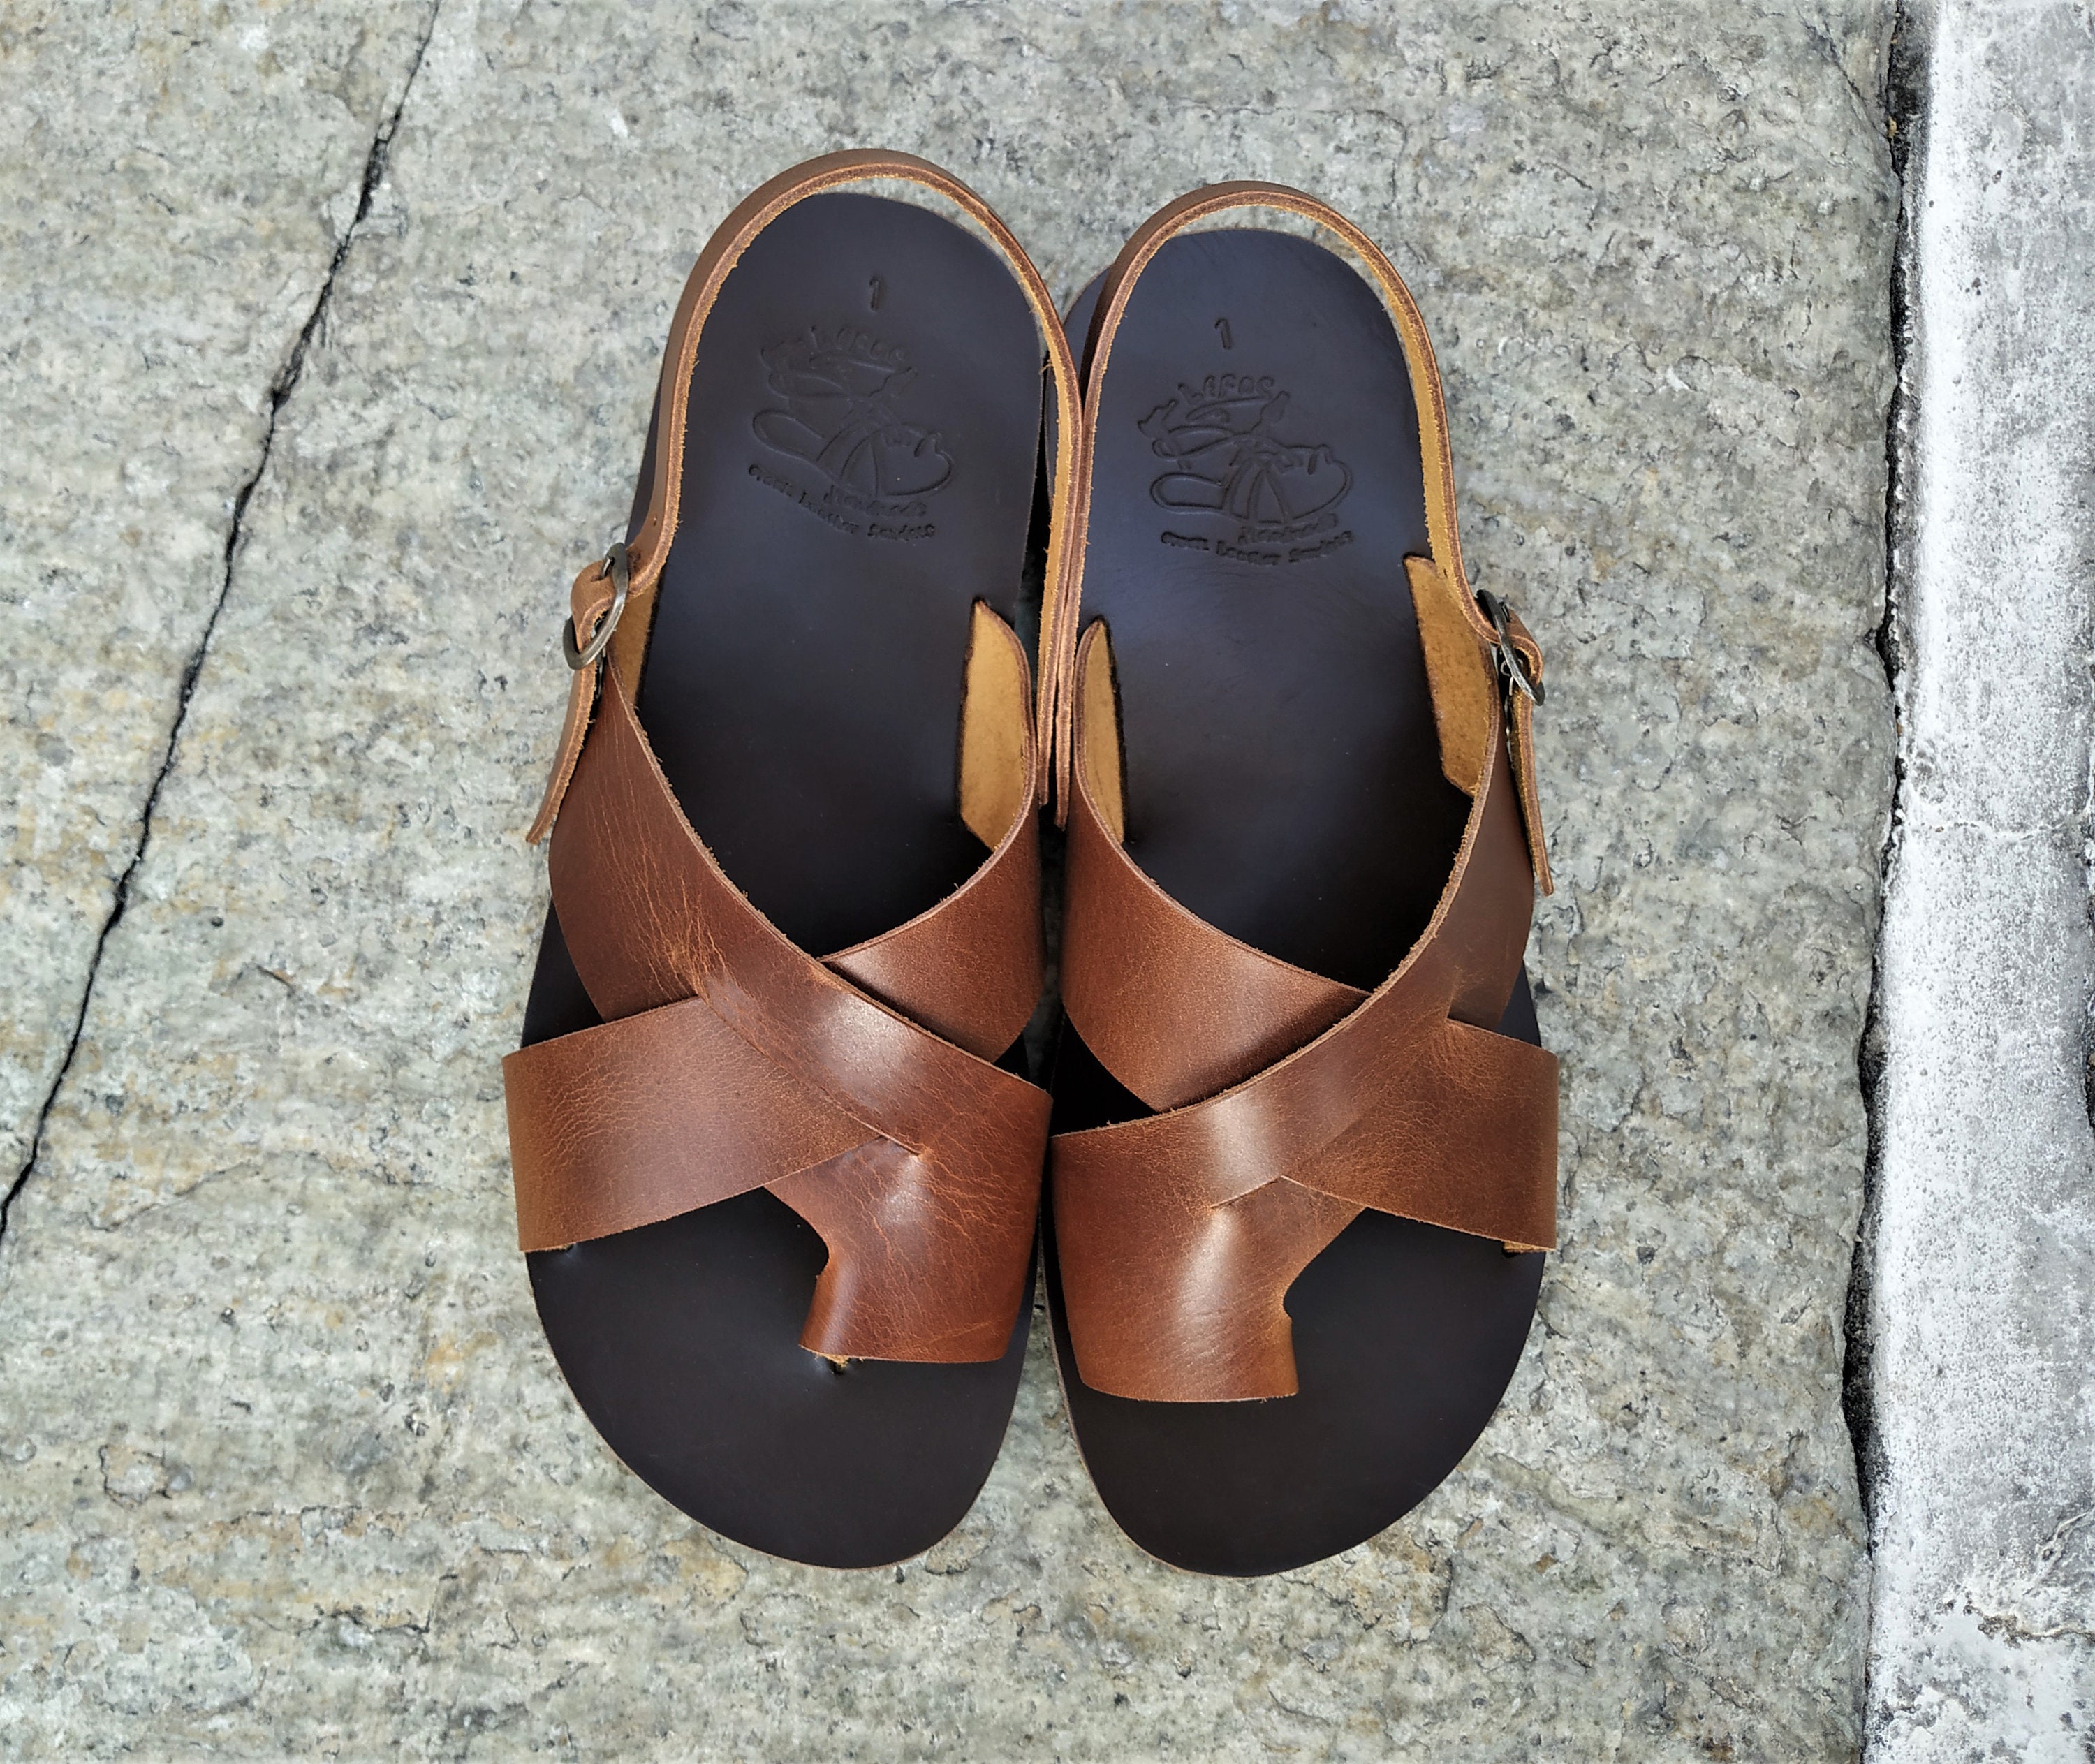 Greek leather sandals Men sandals Summer shoes Handmade | Etsy